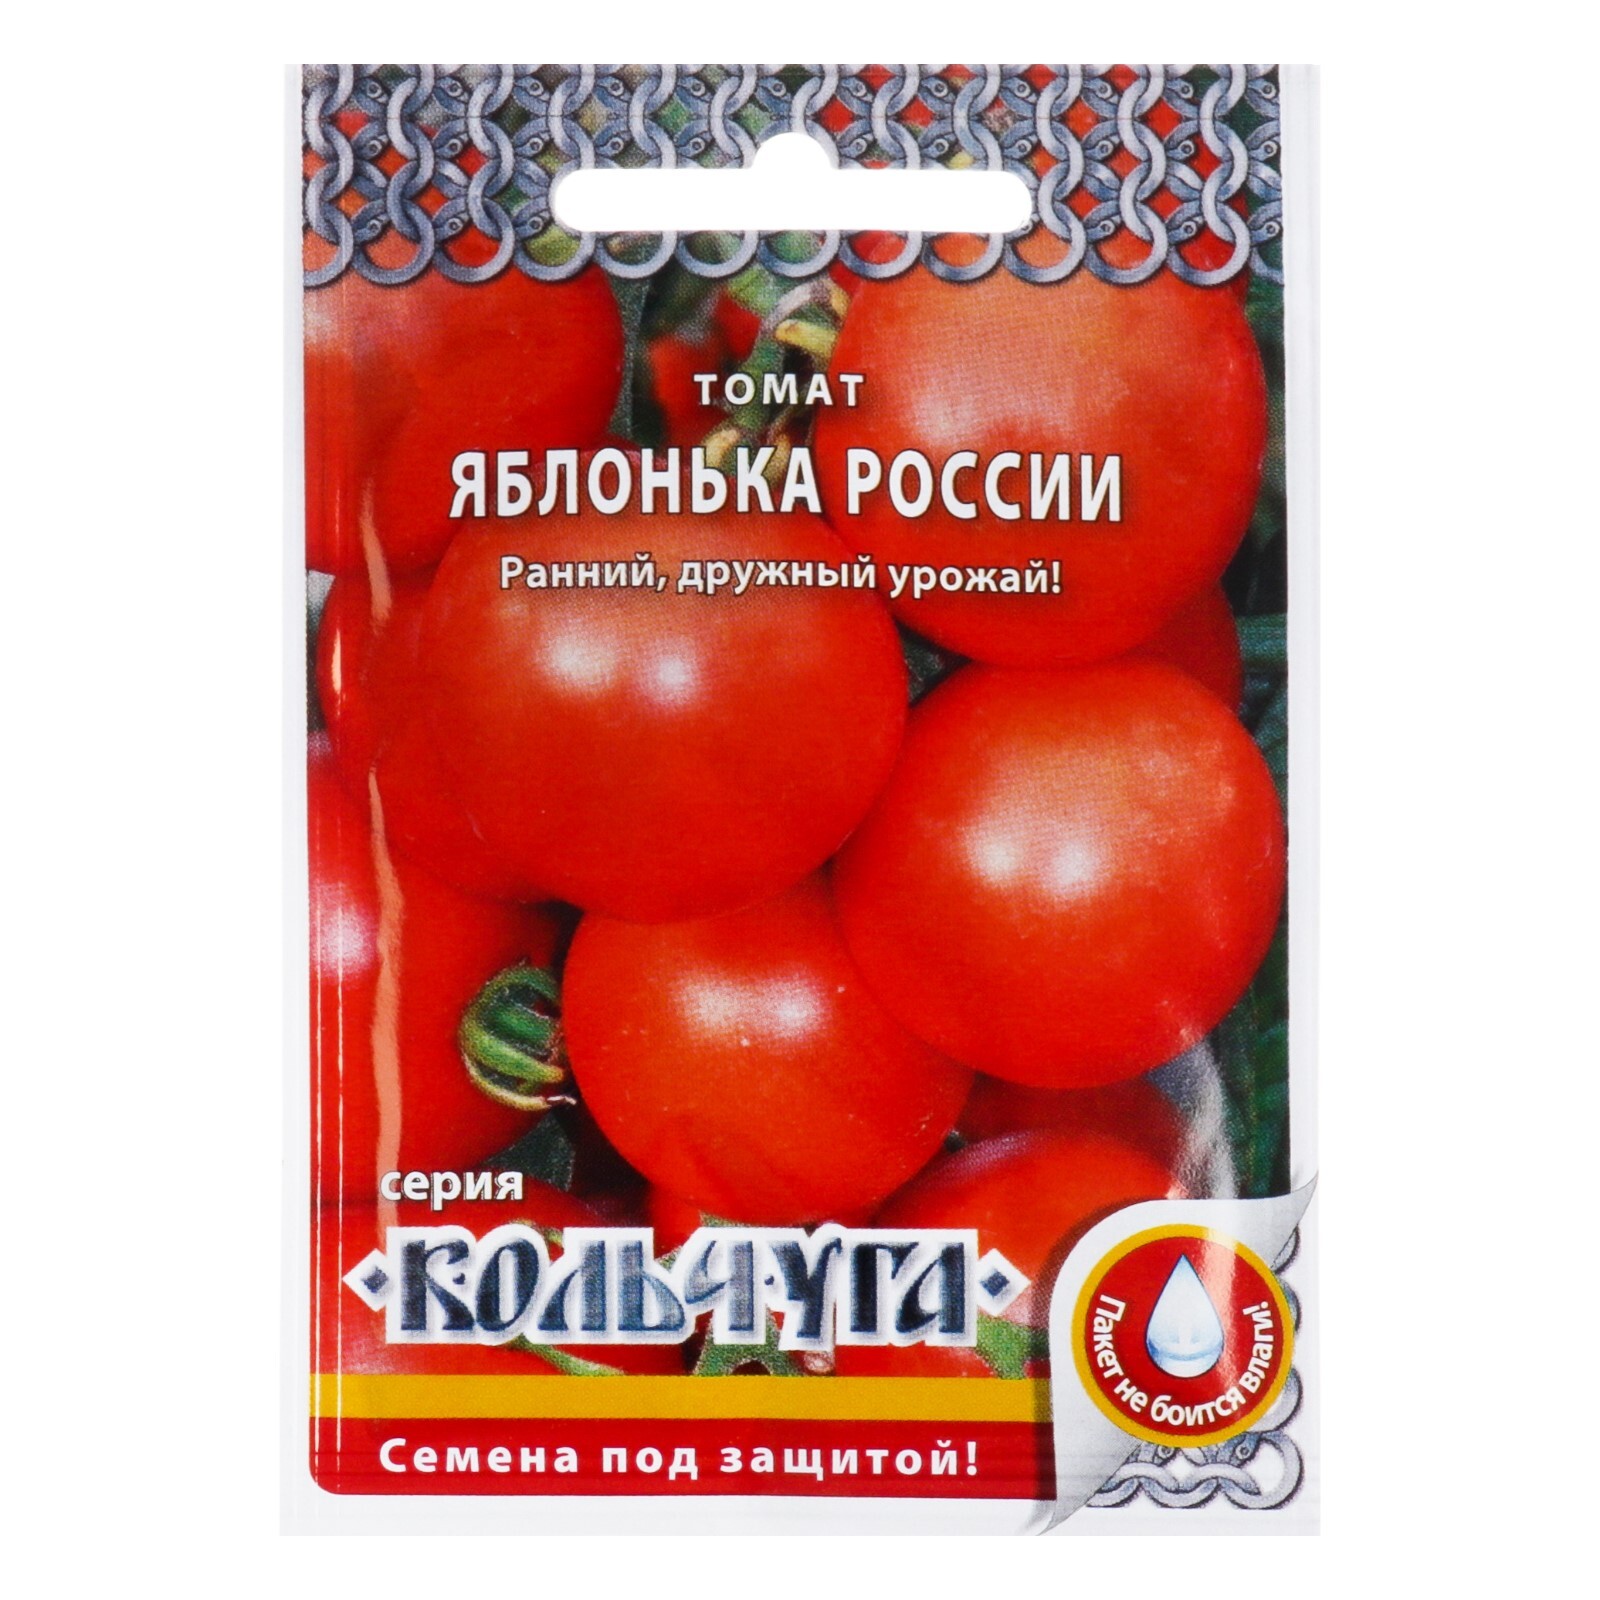 Урожайность томата яблонька россии